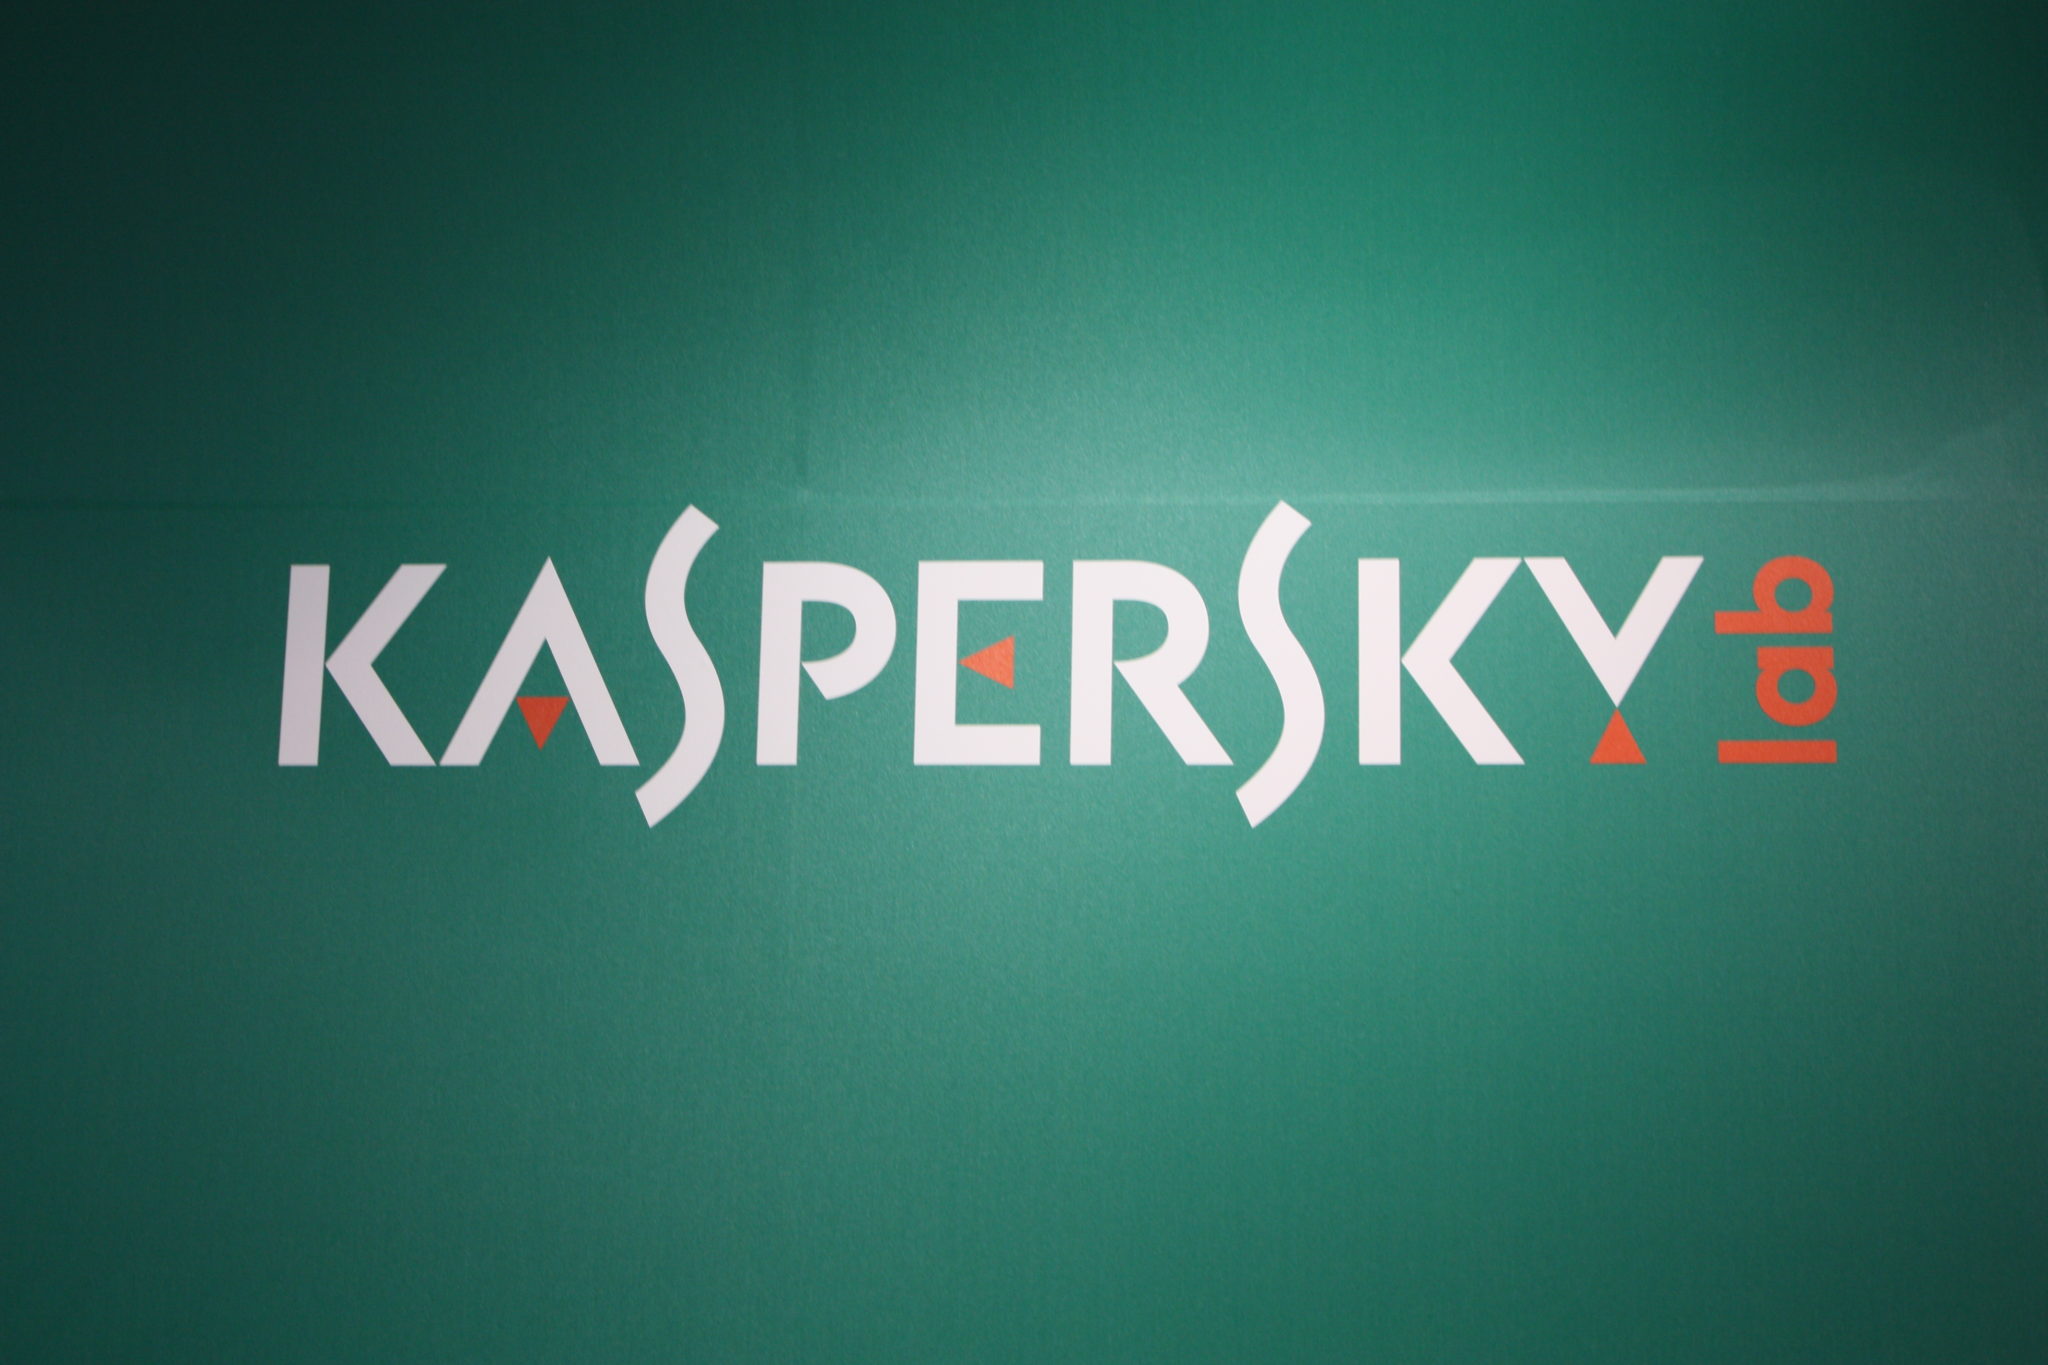 Kaspersky-data-leaking-scam-fraud-security